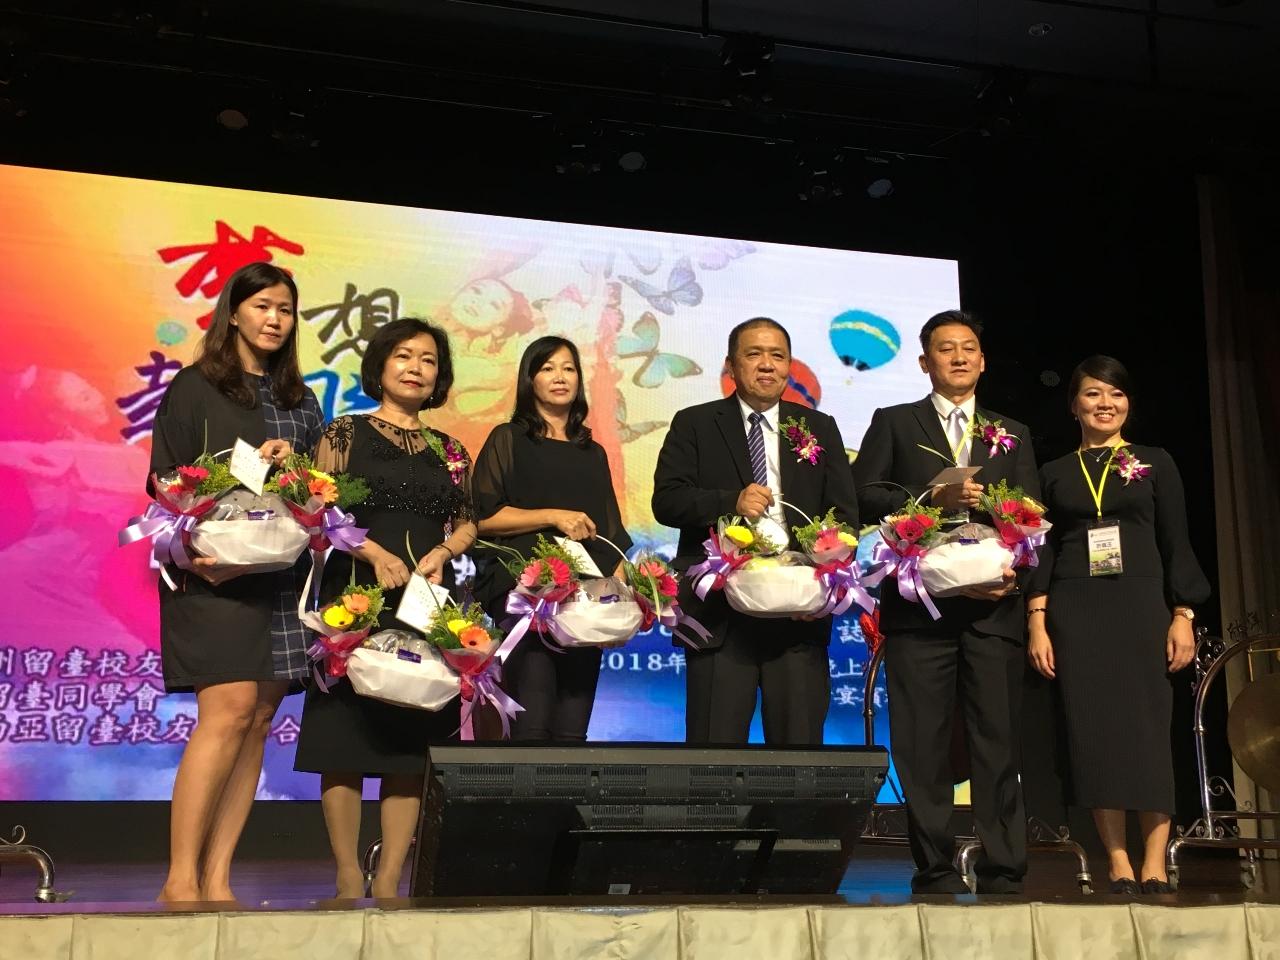 洪大使慧珠(左2)參加峇株留臺同學會2018年「夢想起飛」柔聯文華之夜與貴賓合影留念。